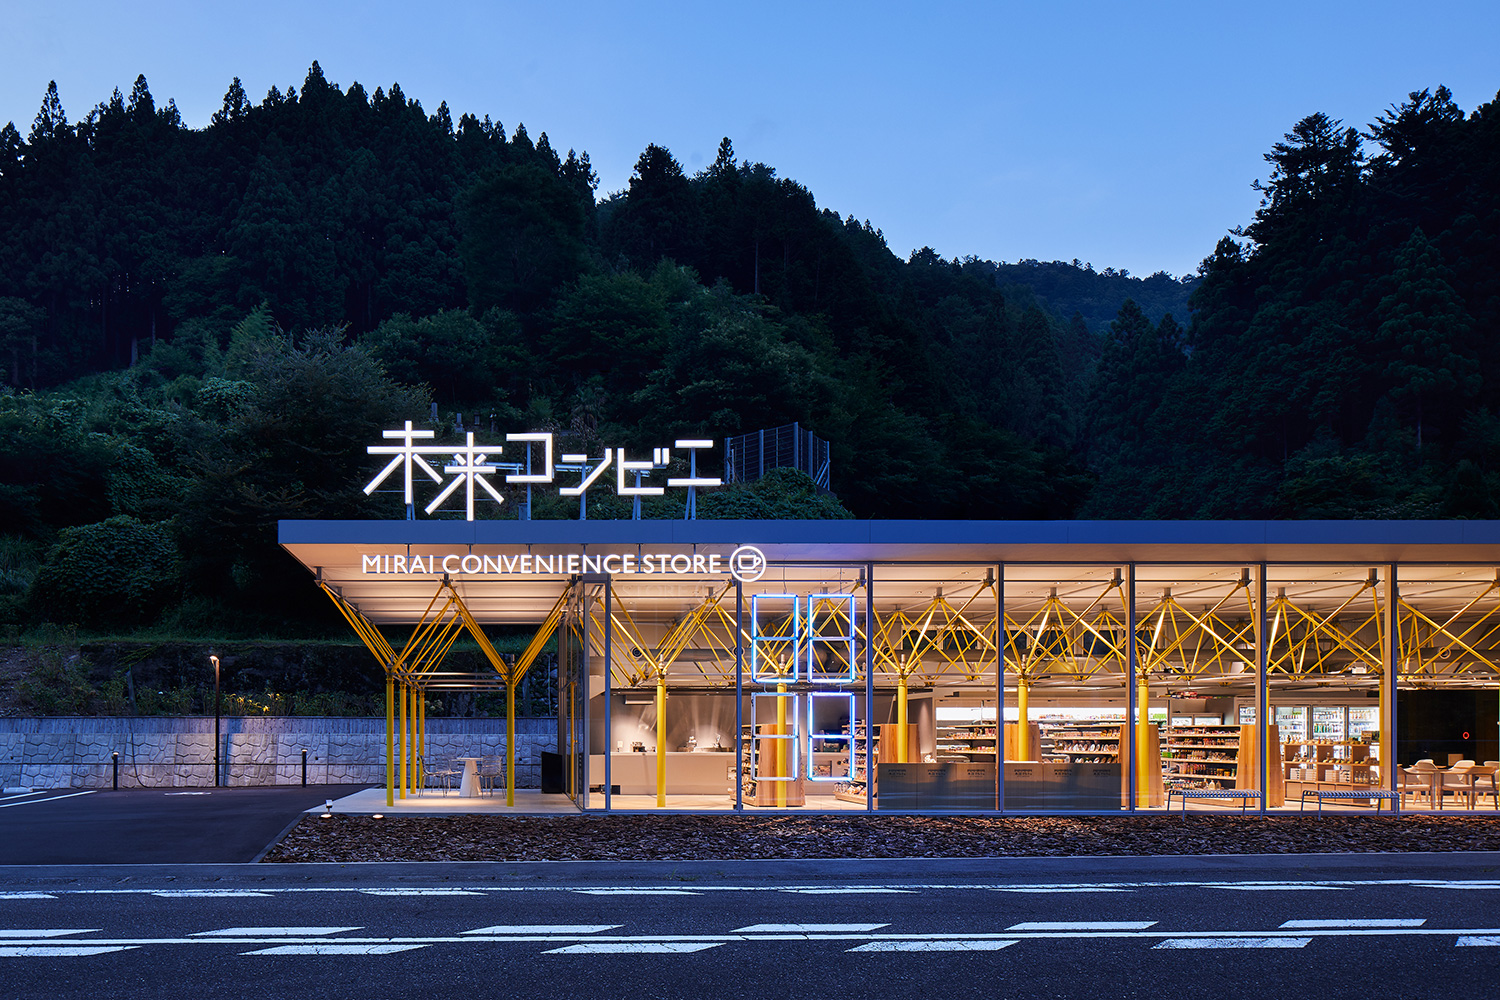 徳島の「未来コンビニ」が日本空間デザイン賞2021グランプリとショップ空間部門金賞のW受賞―国際デザインアワード5冠を達成